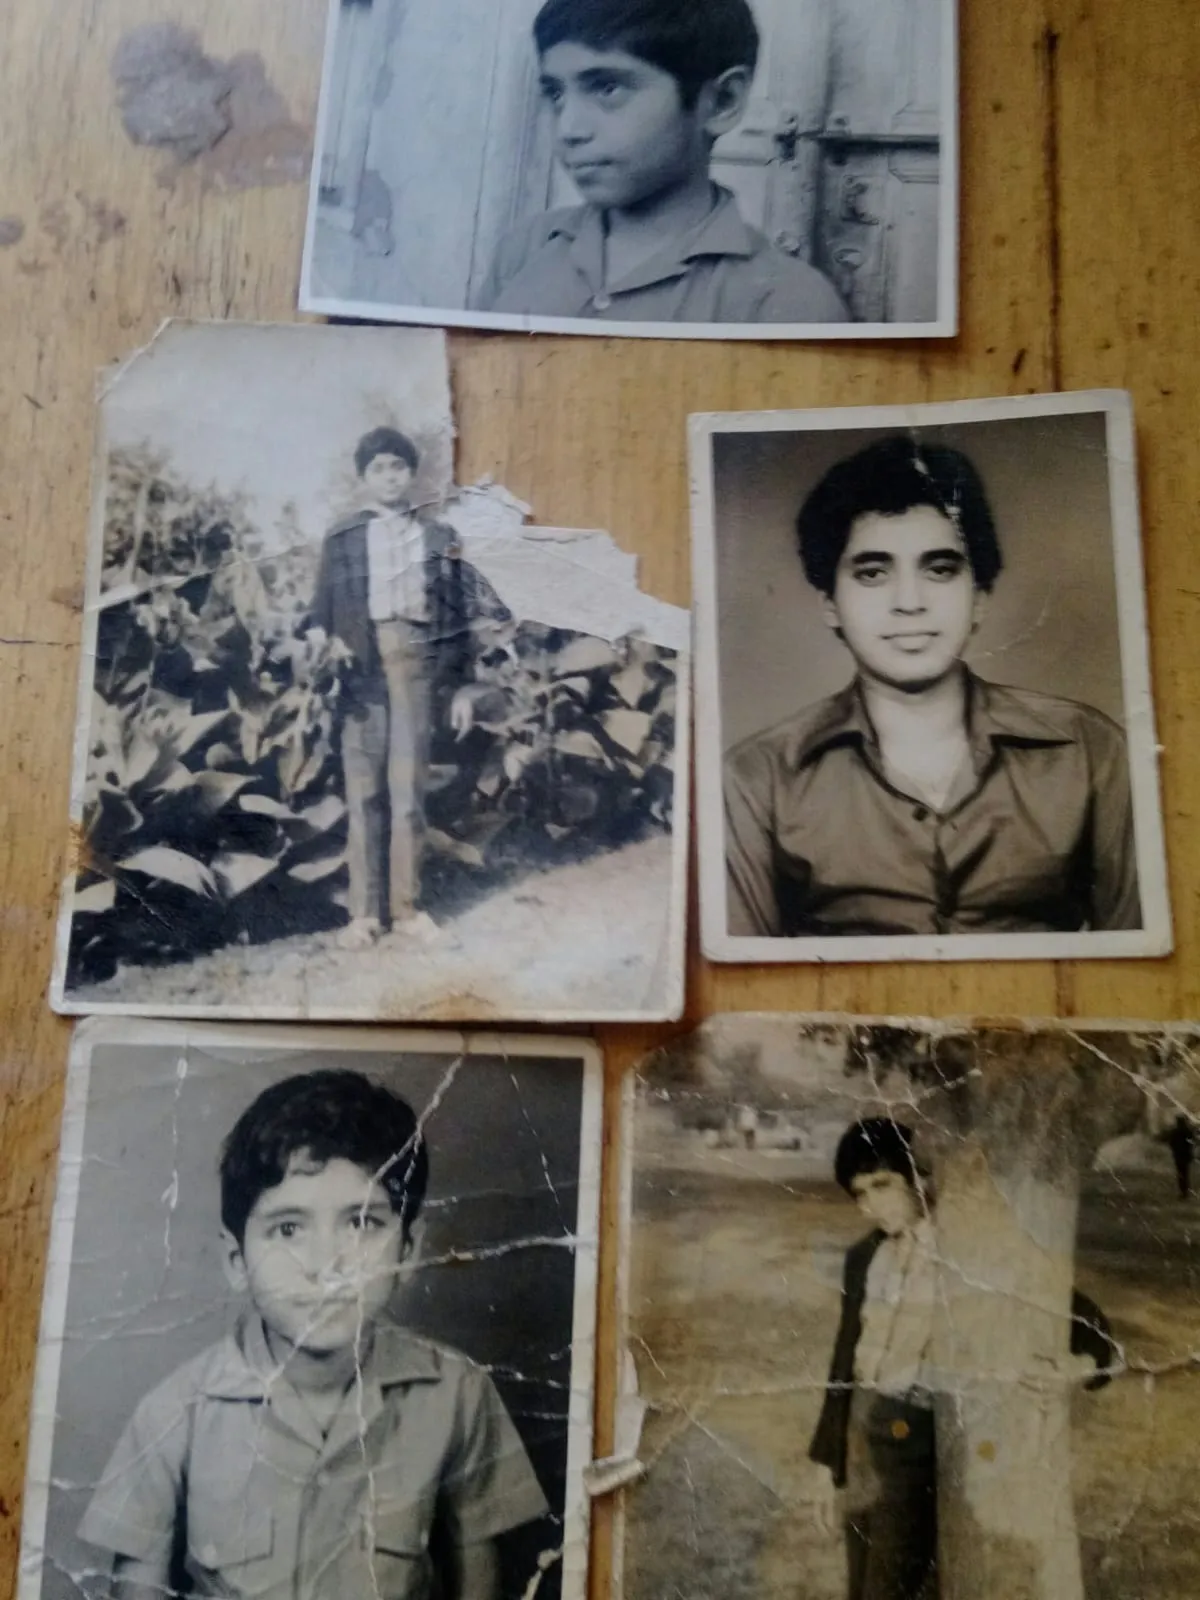 सुरिंदर राणा की बचपन की तस्वीरें